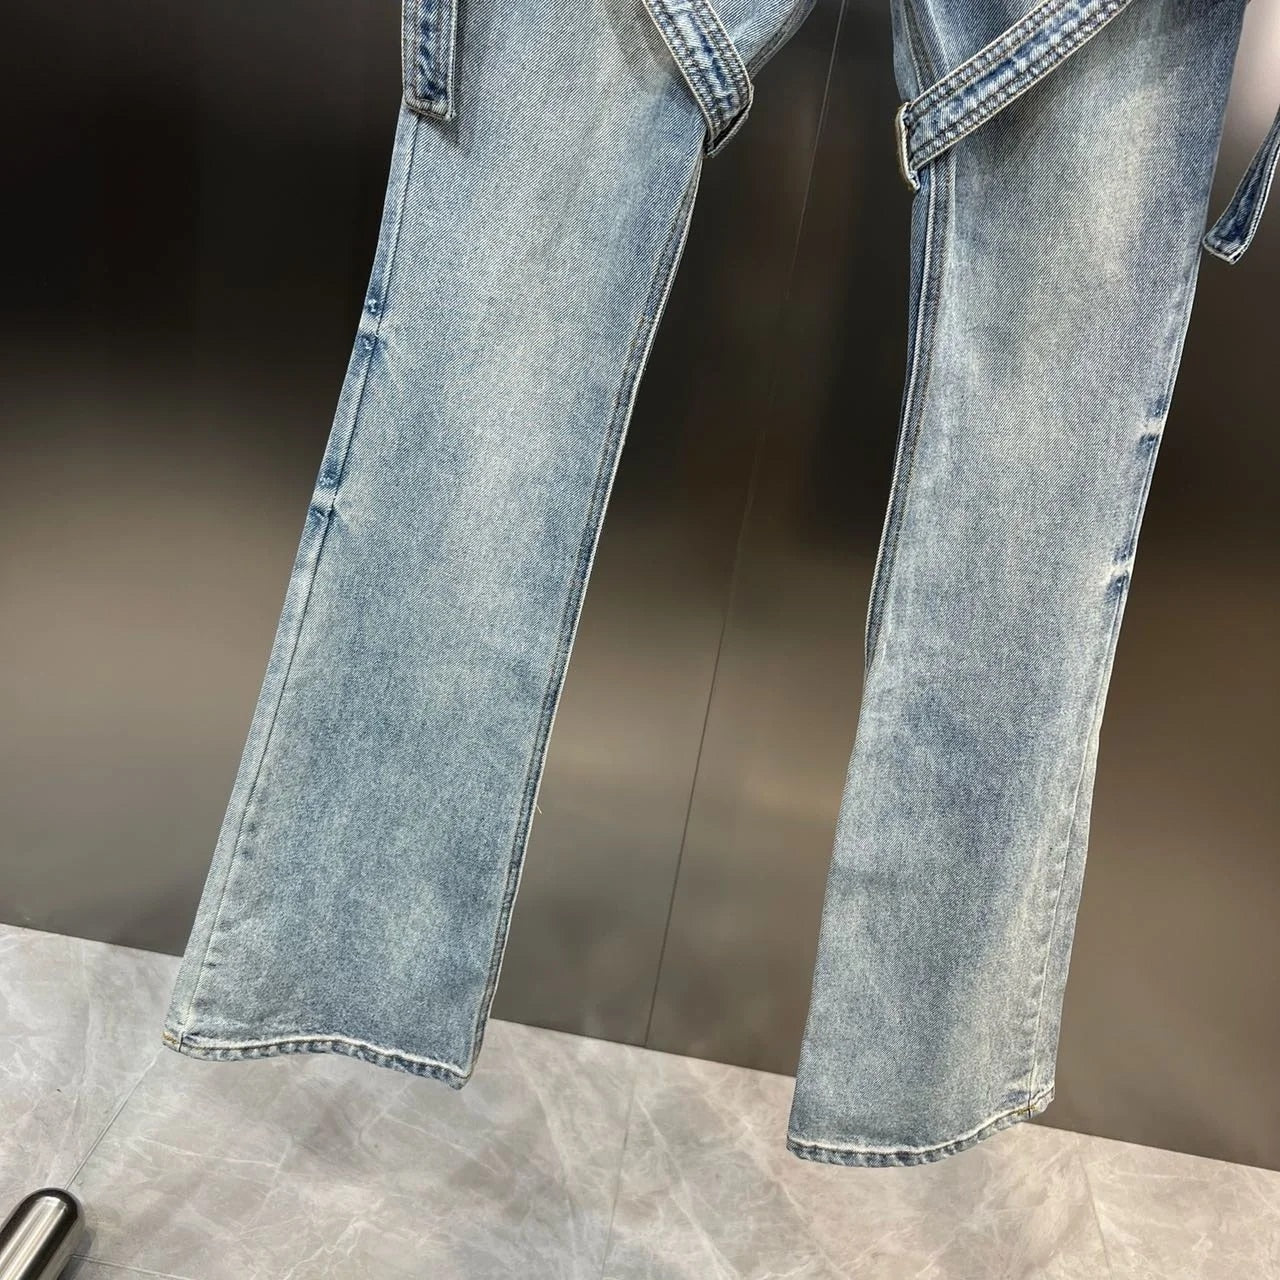 High Waist Double Buttons Bandage Blue Denim Jeans